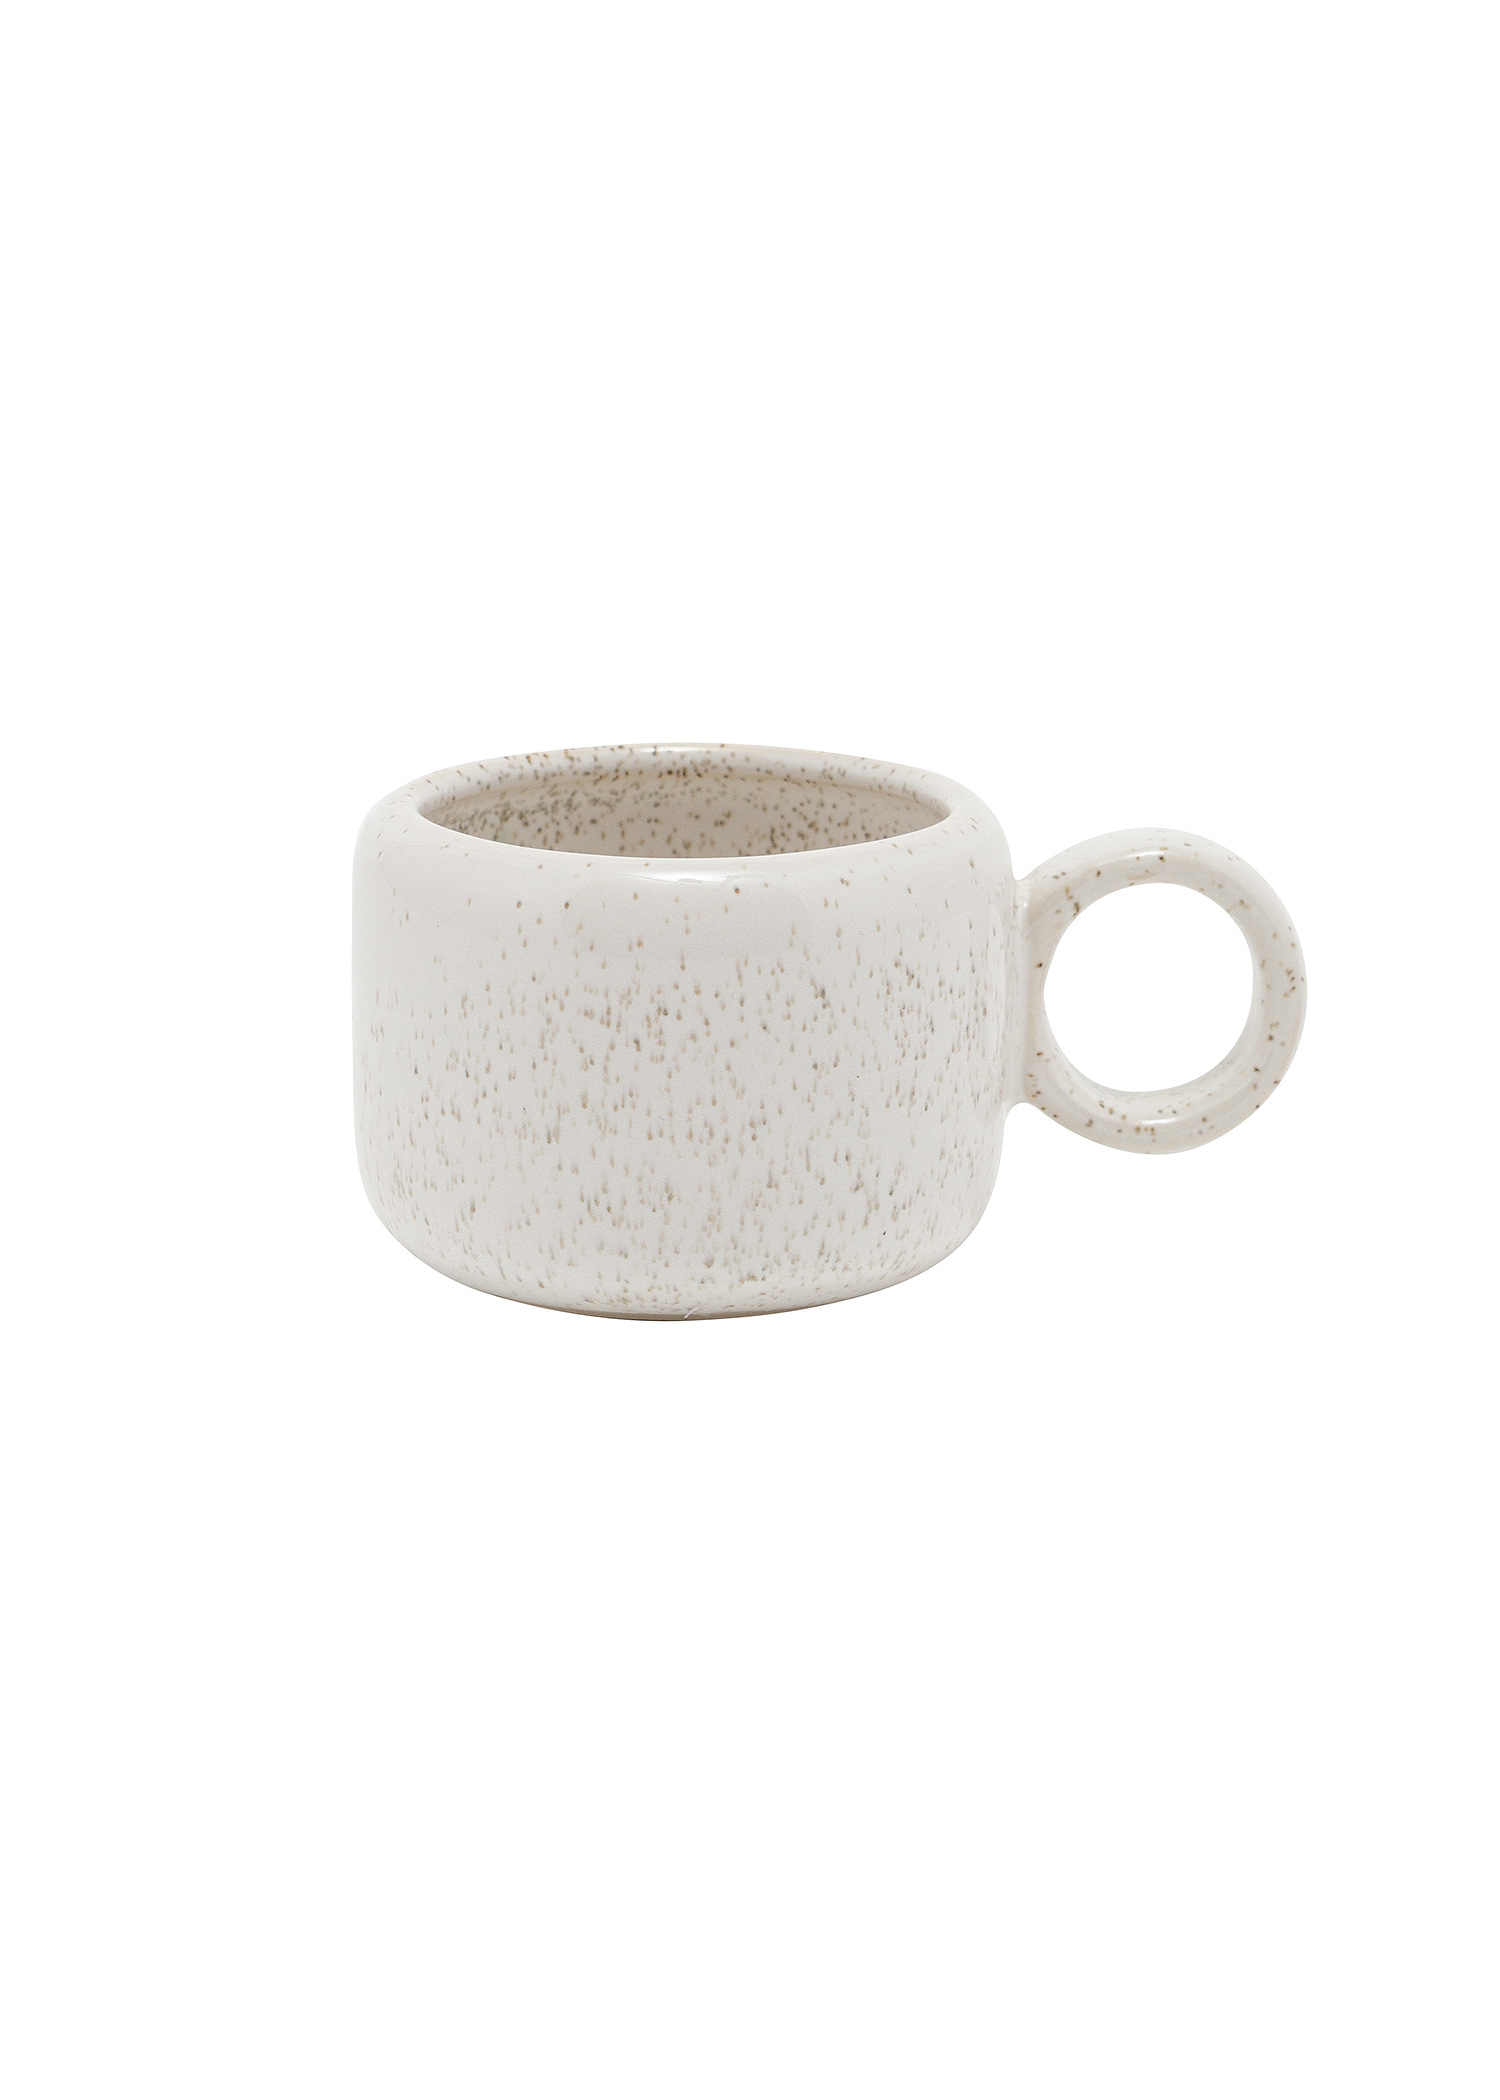 Stoneware gluhwein mug Image 0